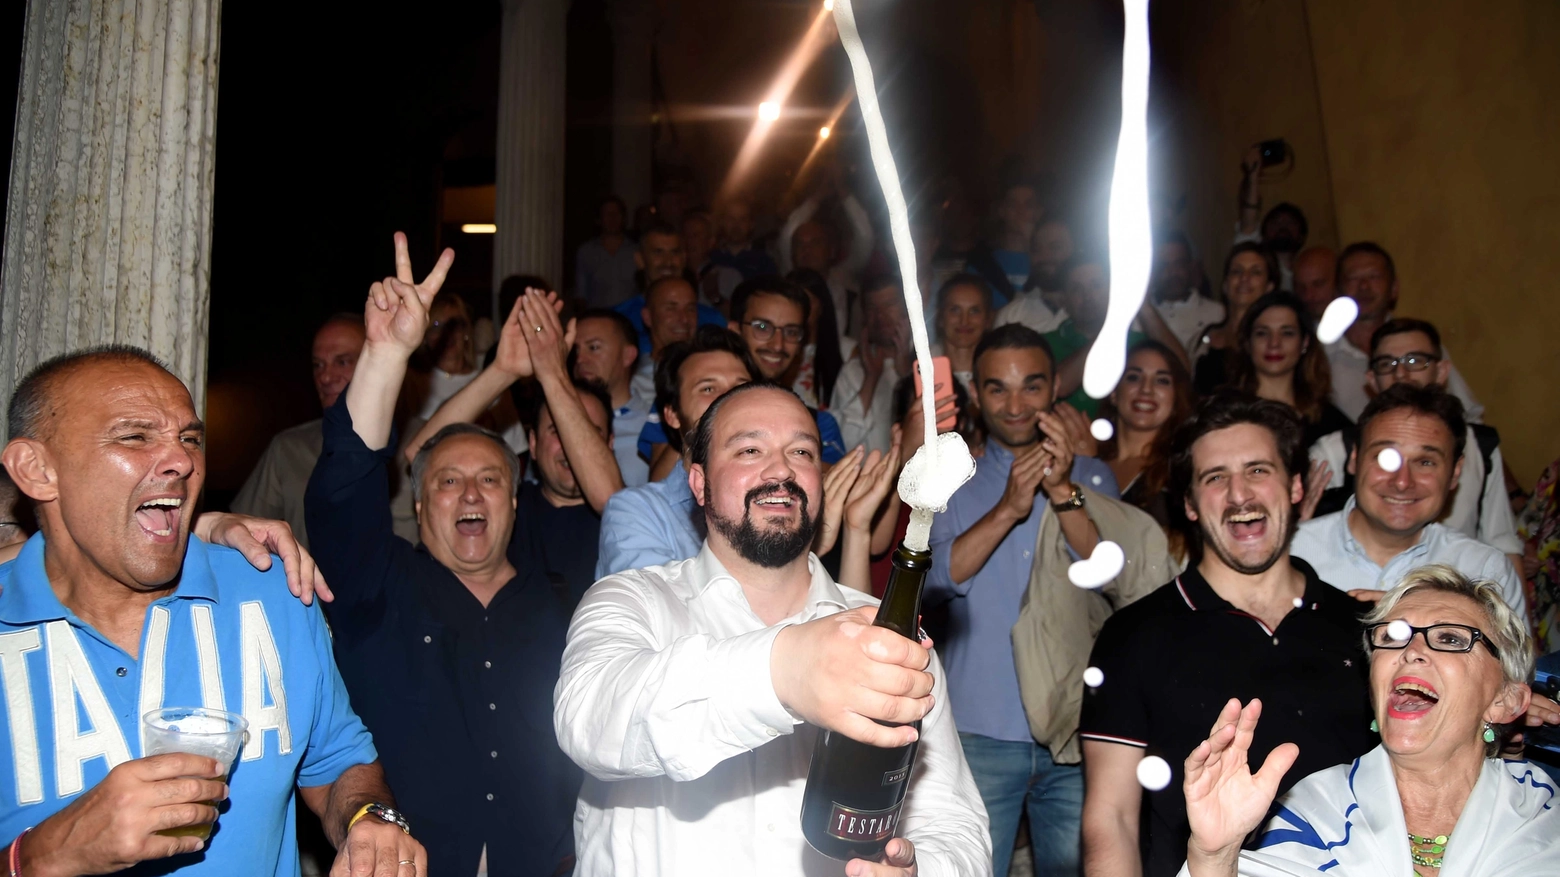 Elezioni comunali, il candidato leghista batte Modonesi con il 56,77% e scoppia la festa: "Sono entusiasta, subito al lavoro"